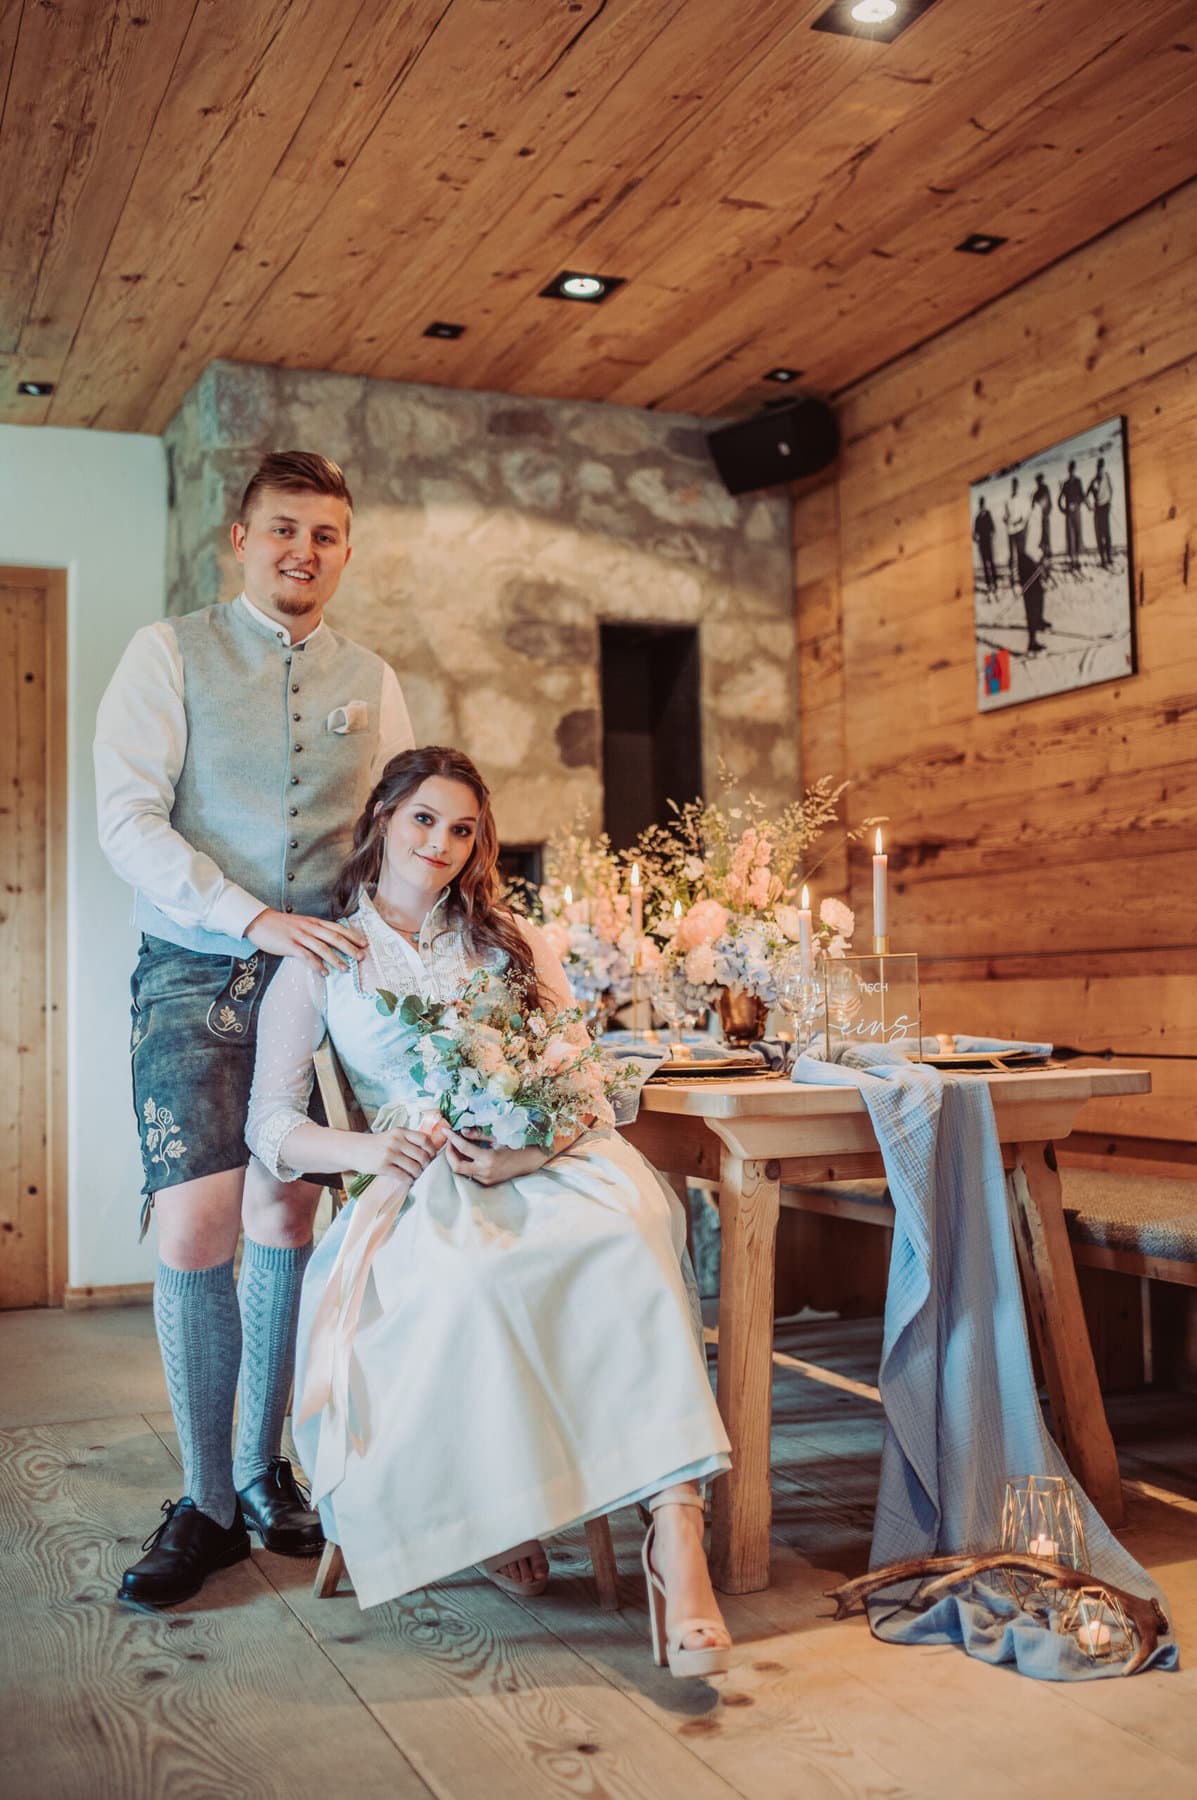 Der Esstisch der Hochzeit auf der Meckatzer Sportalp. Die Braut sitzt an einem gedeckten Tisch und hinter ihr steht der Bräutigam, dabei liegen seine Hände auf ihren Schultern.